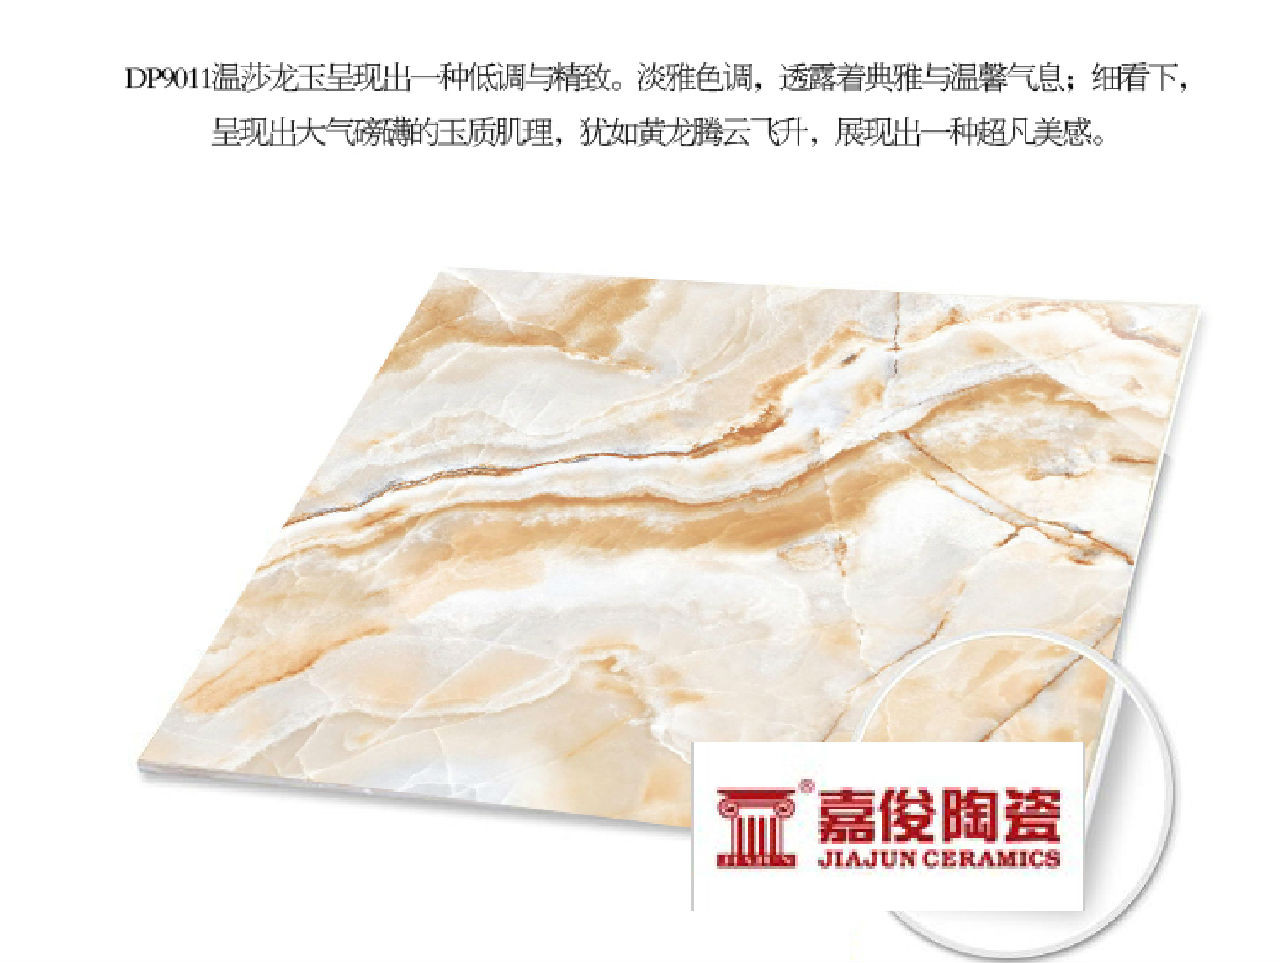 新品嘉俊陶瓷超平釉客餐厅厨卫瓷砖地墙砖温莎龙玉dp9011 900*900